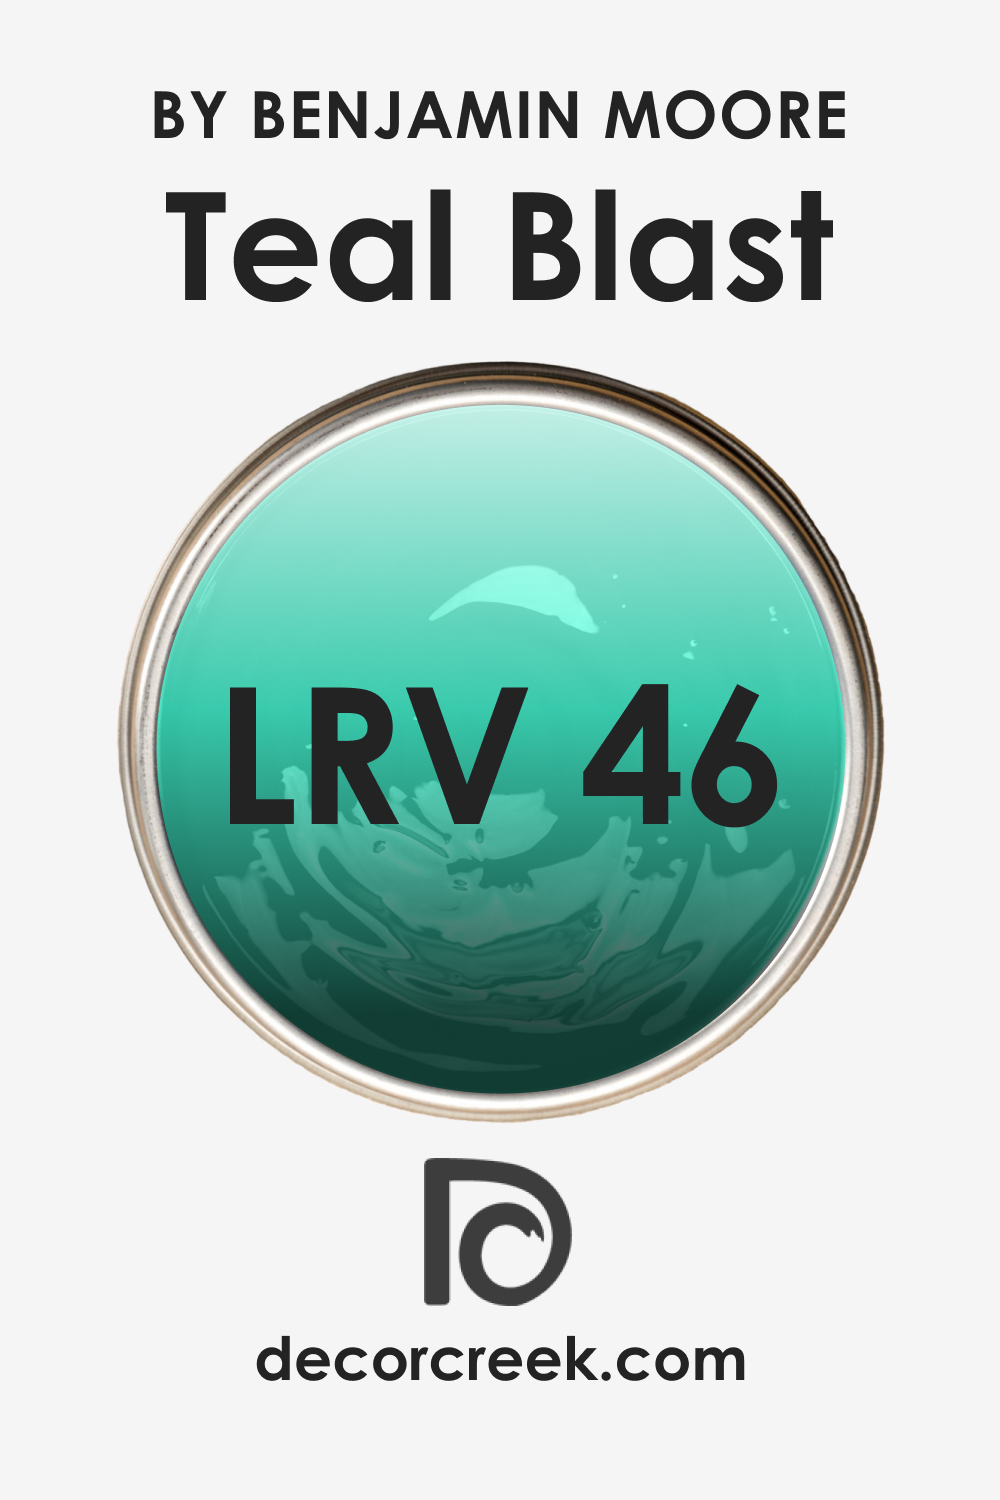 LRV of Teal Blast 2039-40